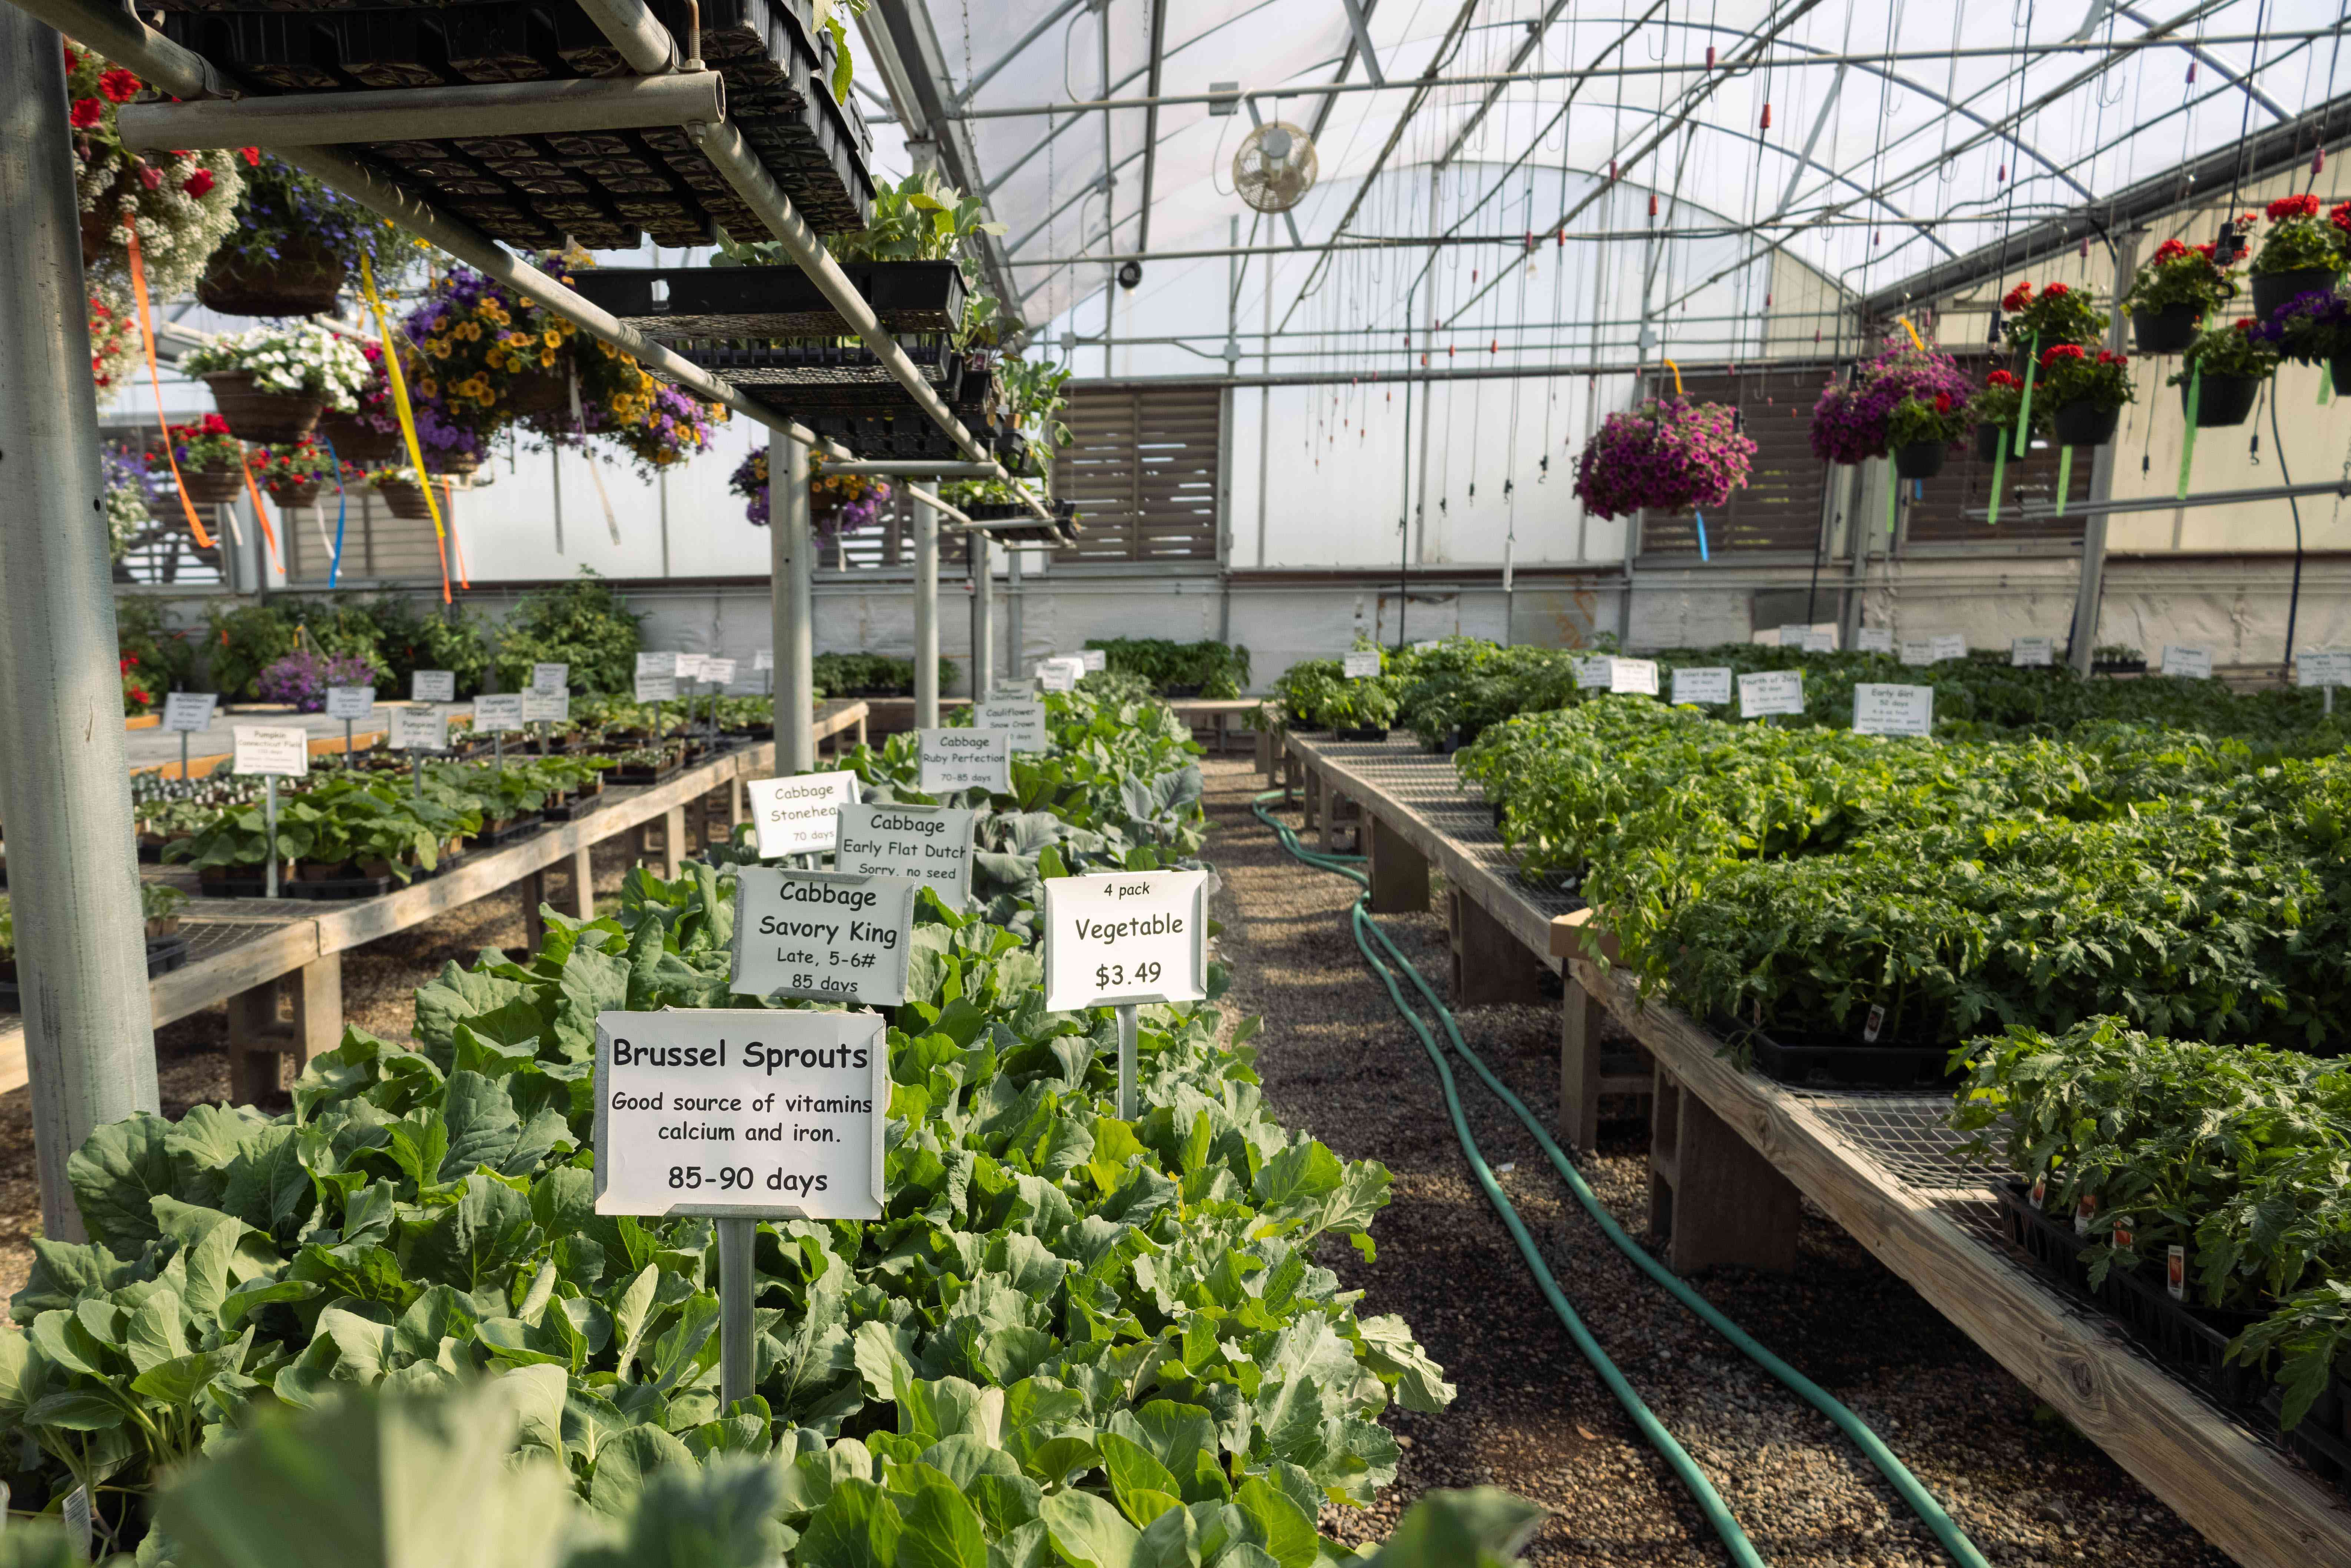 大型露天温室，有各种悬挂式植物和可食用的启动植物出售